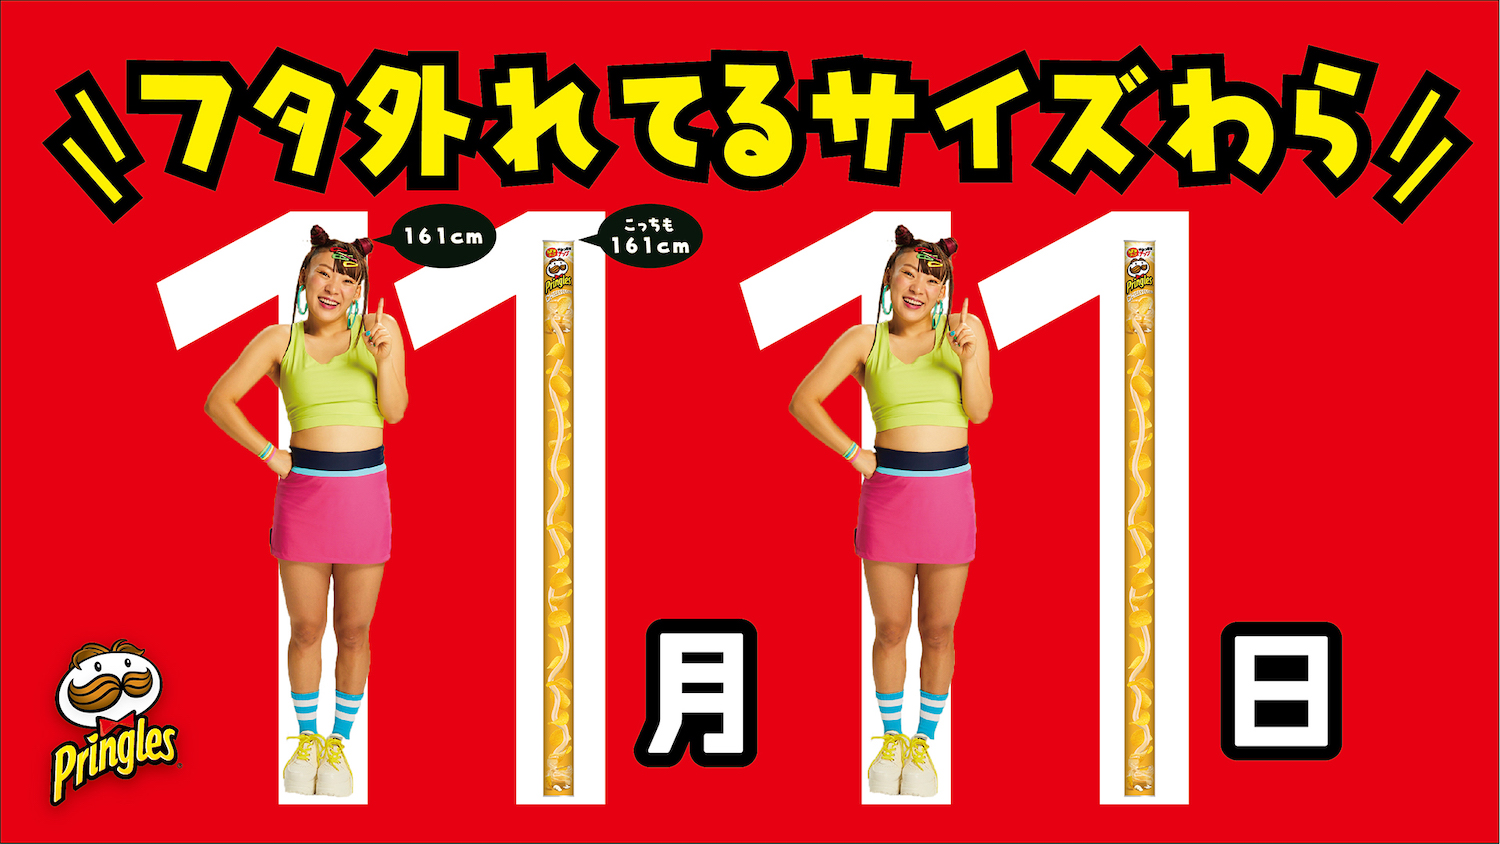 Au Japon, Pringles conçoit crée des tubes selon la taille de ses clients